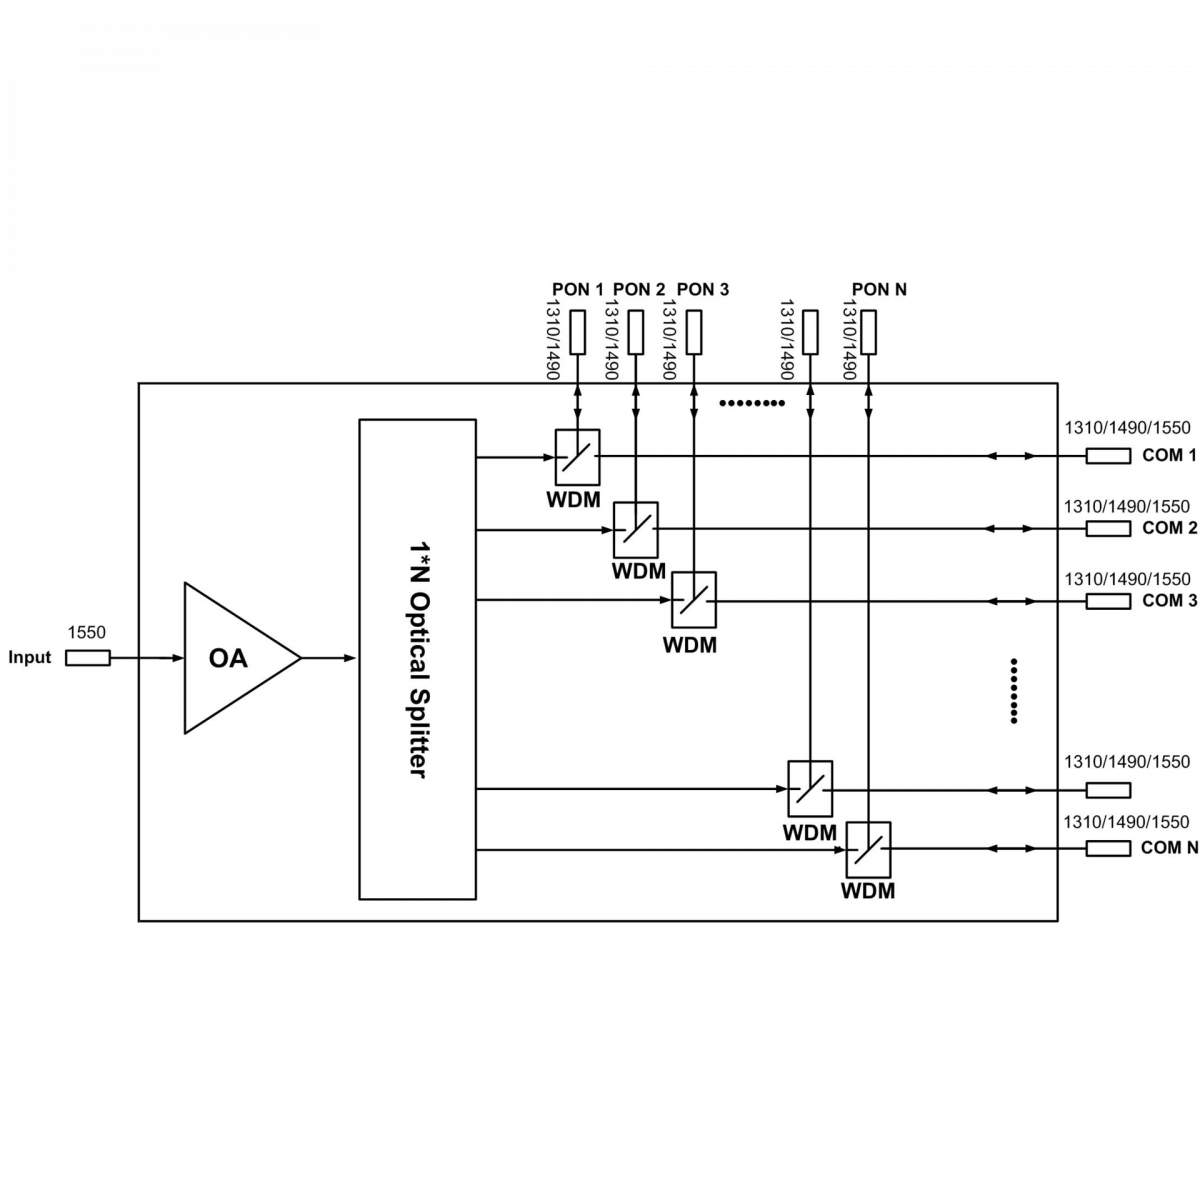 Оптический усилитель VERMAX для сетей КТВ, 8*20dBm, WDM фильтр PON